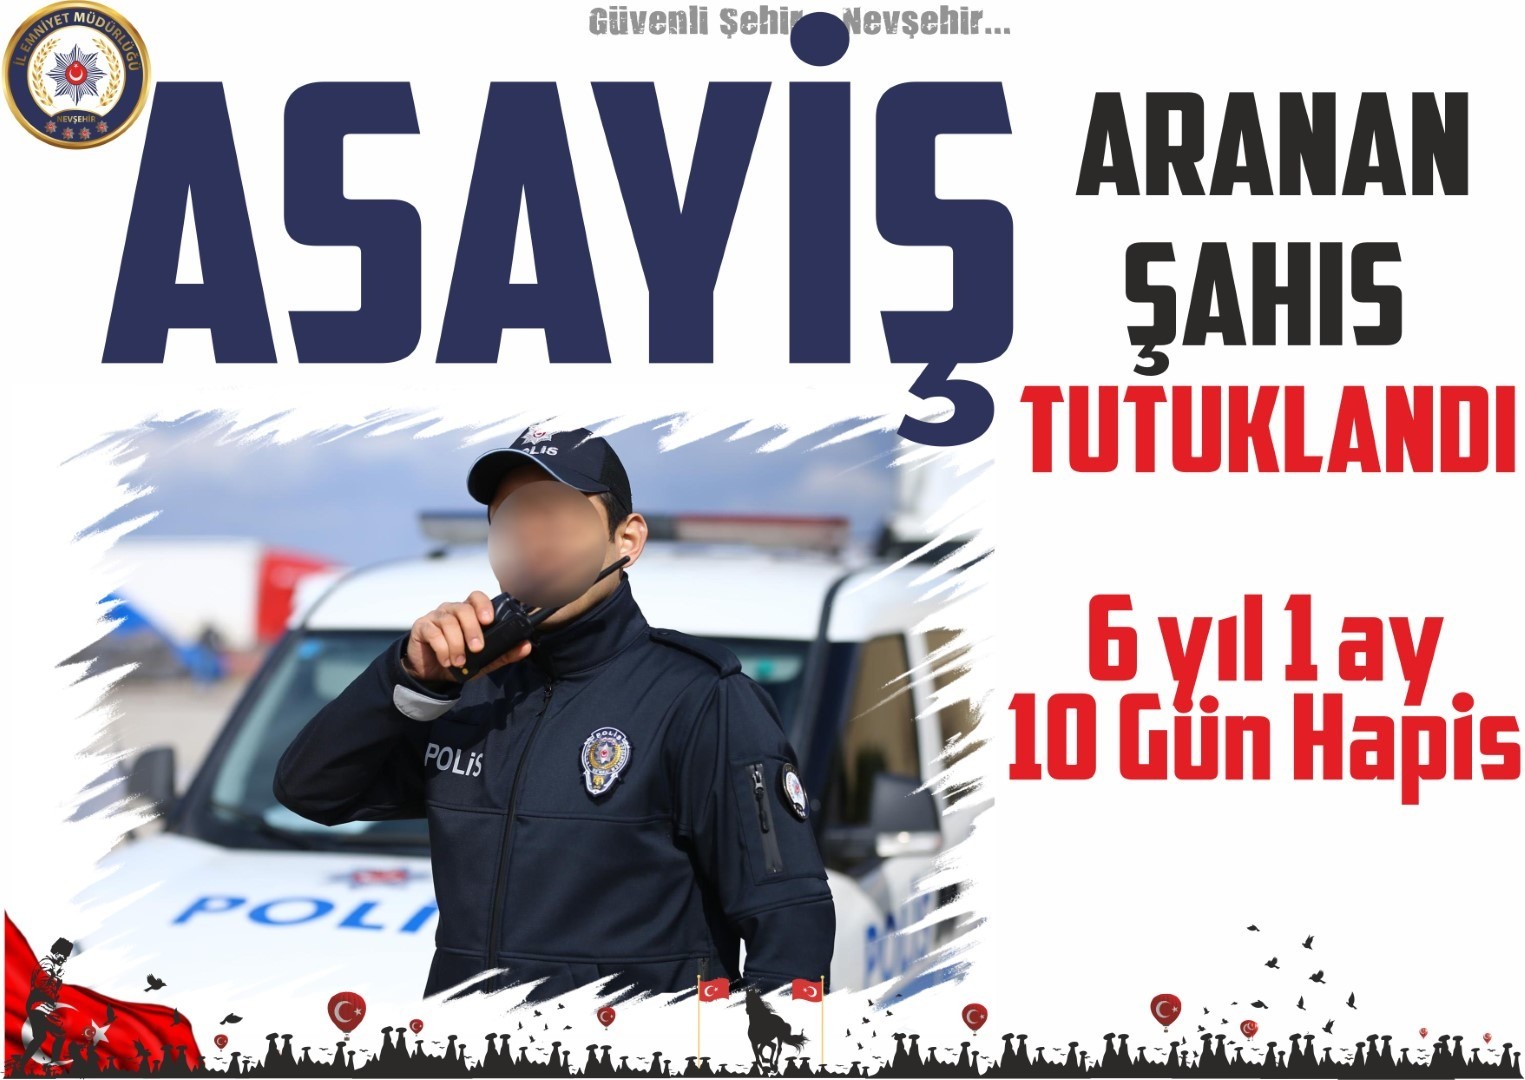 Nevşehir’de aranması bulunan 1 şahıs yakalandı #nevsehir